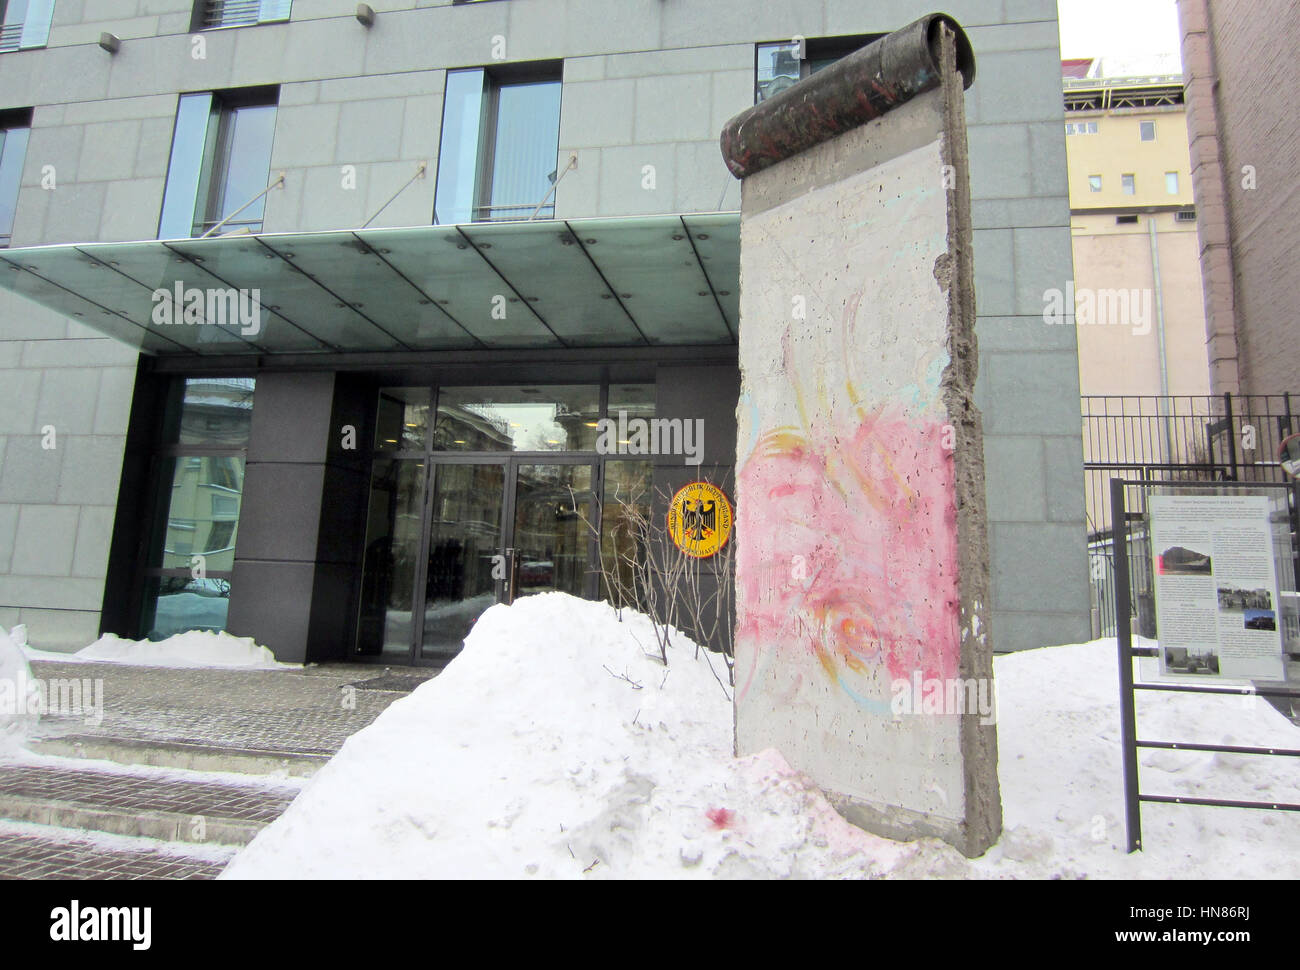 Un pezzo del muro di Berlino sul display di fronte all'ambasciata tedesca a Kiev in Ucraina, 08 febbraio 2017. Un deputato ucraino spray-dipinse la parola 'Nein' ('n') sul monumento in segno di protesta per un commento fatto da ambasciatore tedesco nel paese per quanto riguarda le elezioni nelle separist-controllato Donbass regione. La vernice spray è stato rimosso. Foto: Andreas Stein/dpa Foto Stock